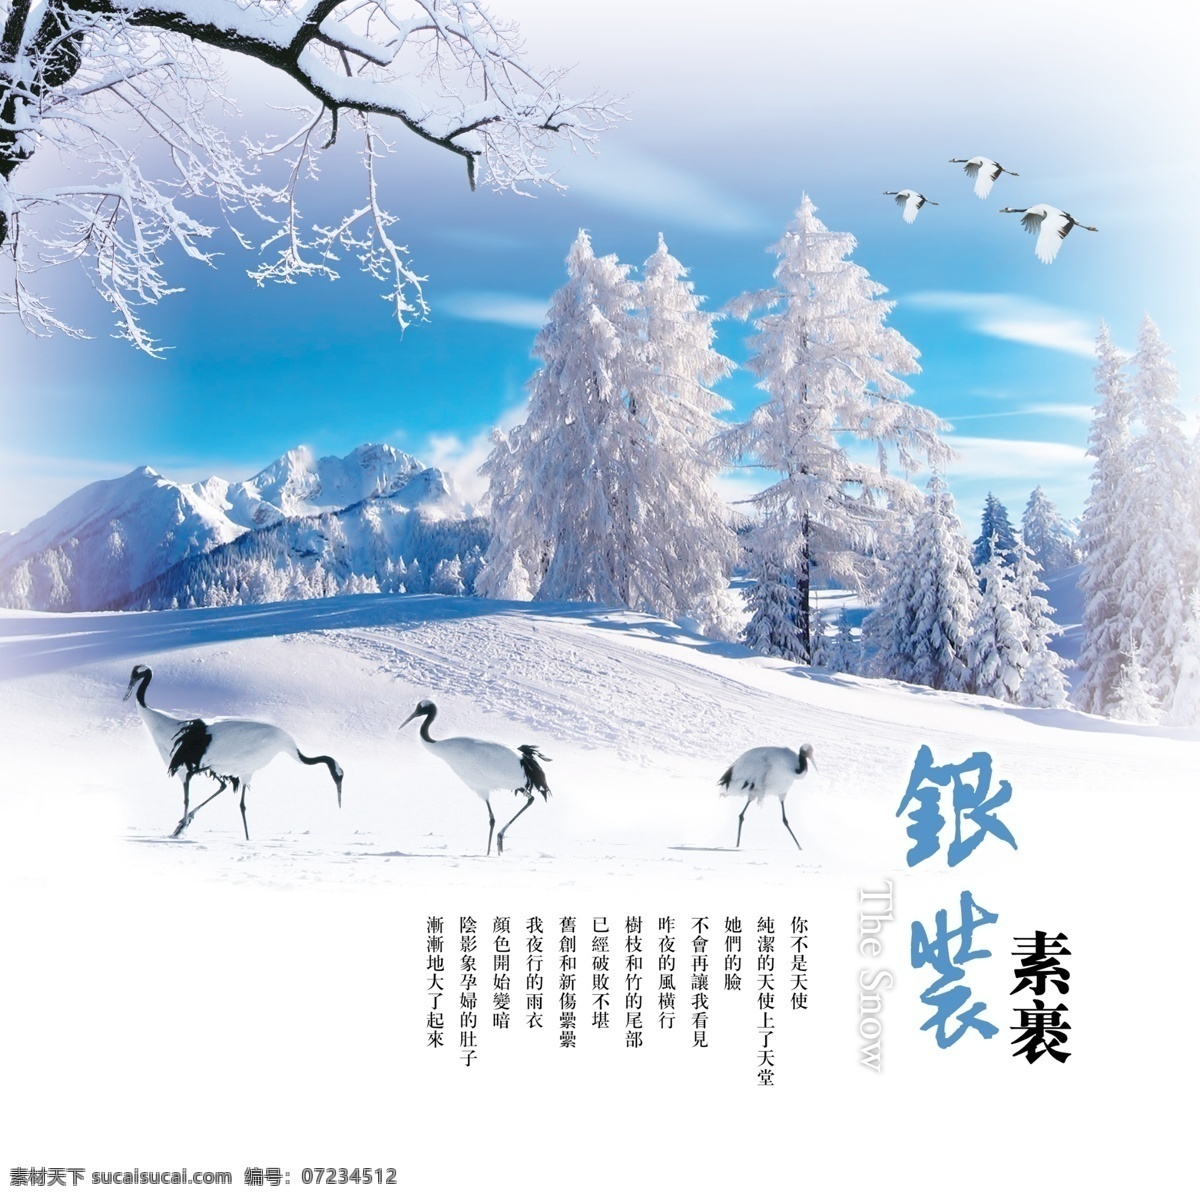 唯美 风景 创意素材 冬天 仙鹤 雪景 原创设计 原创装饰设计